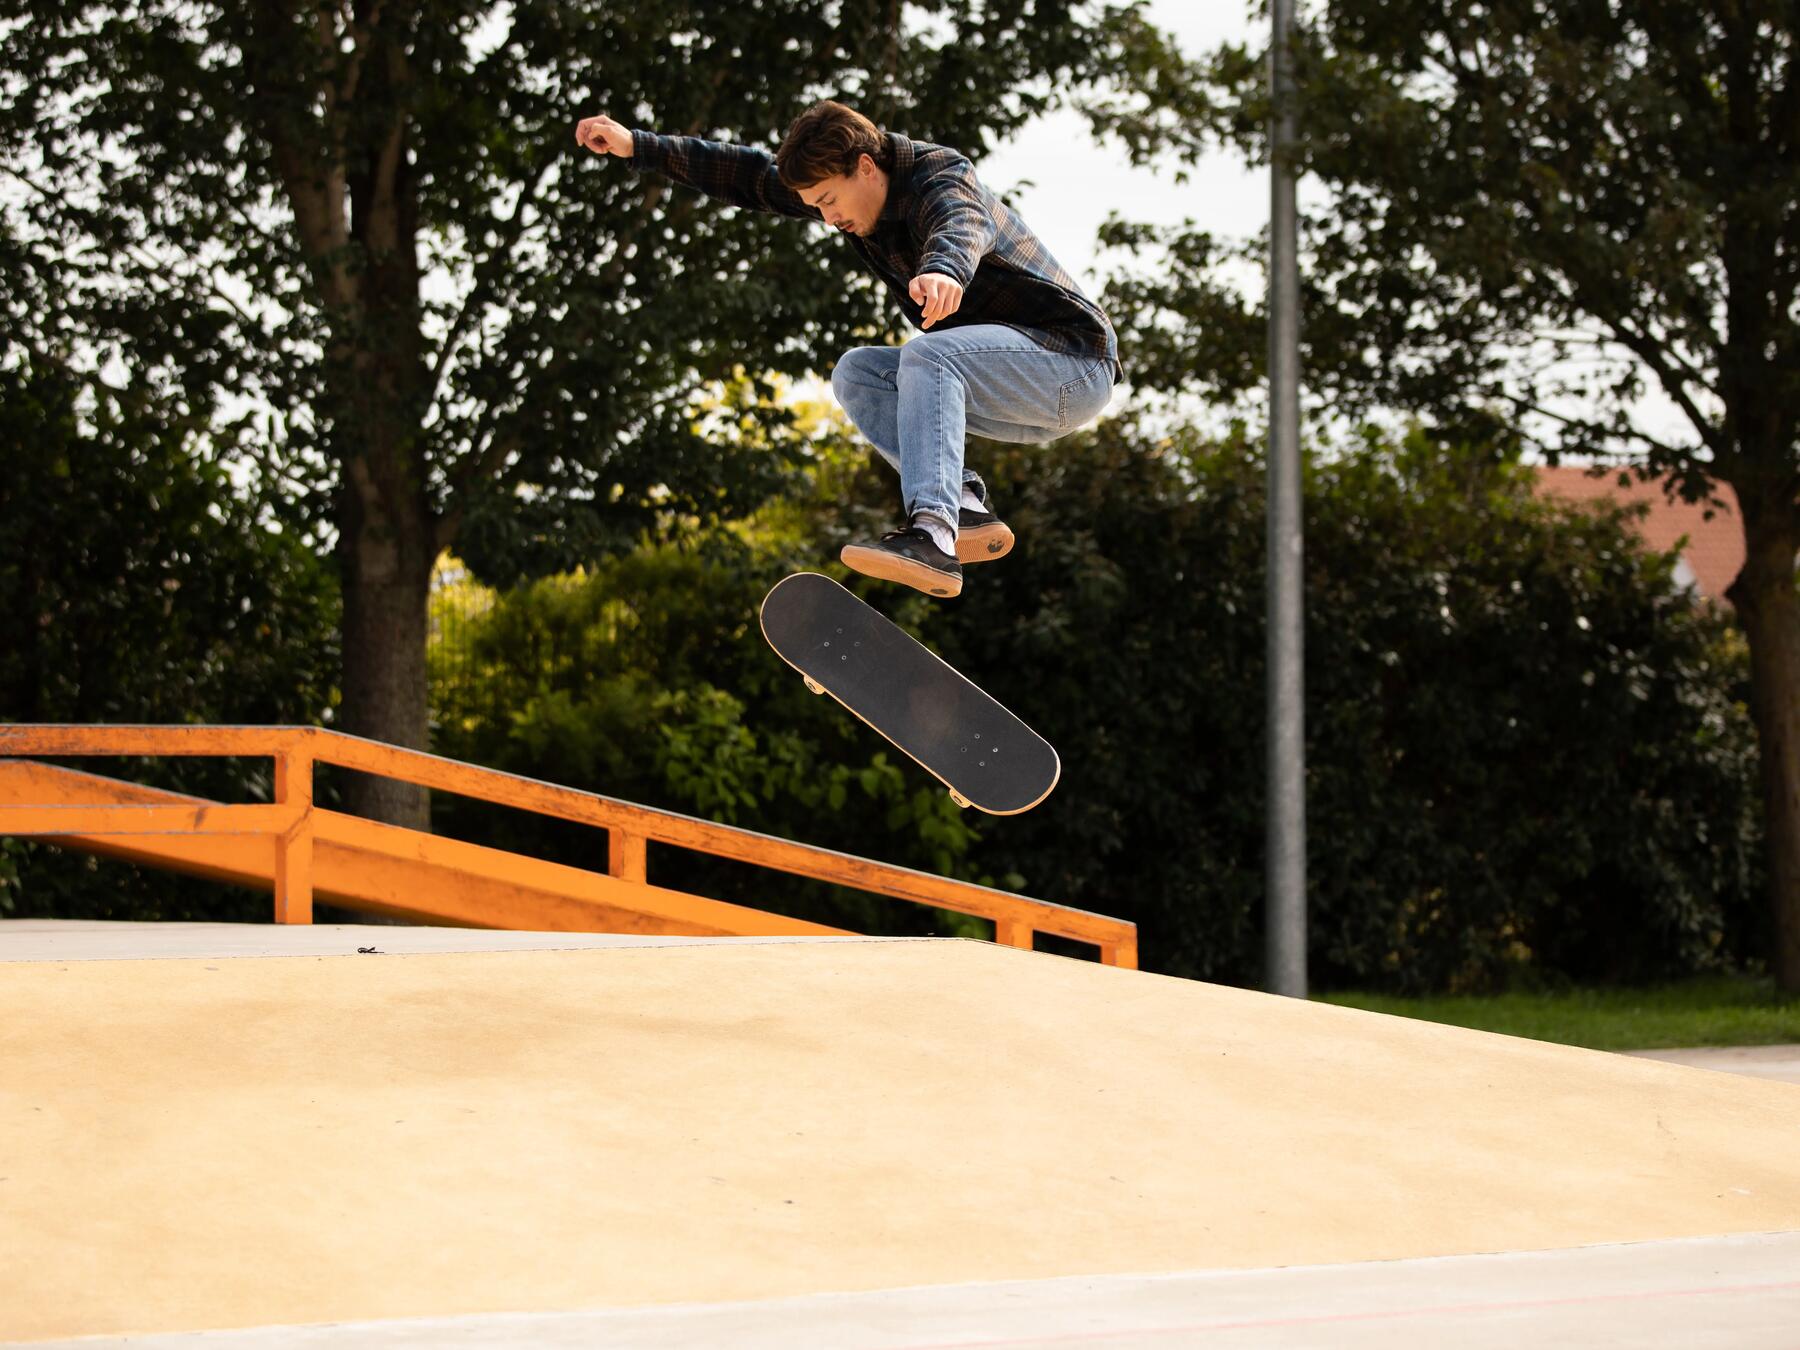 Bild von einem Mann, der einen Skateboard-Trick macht